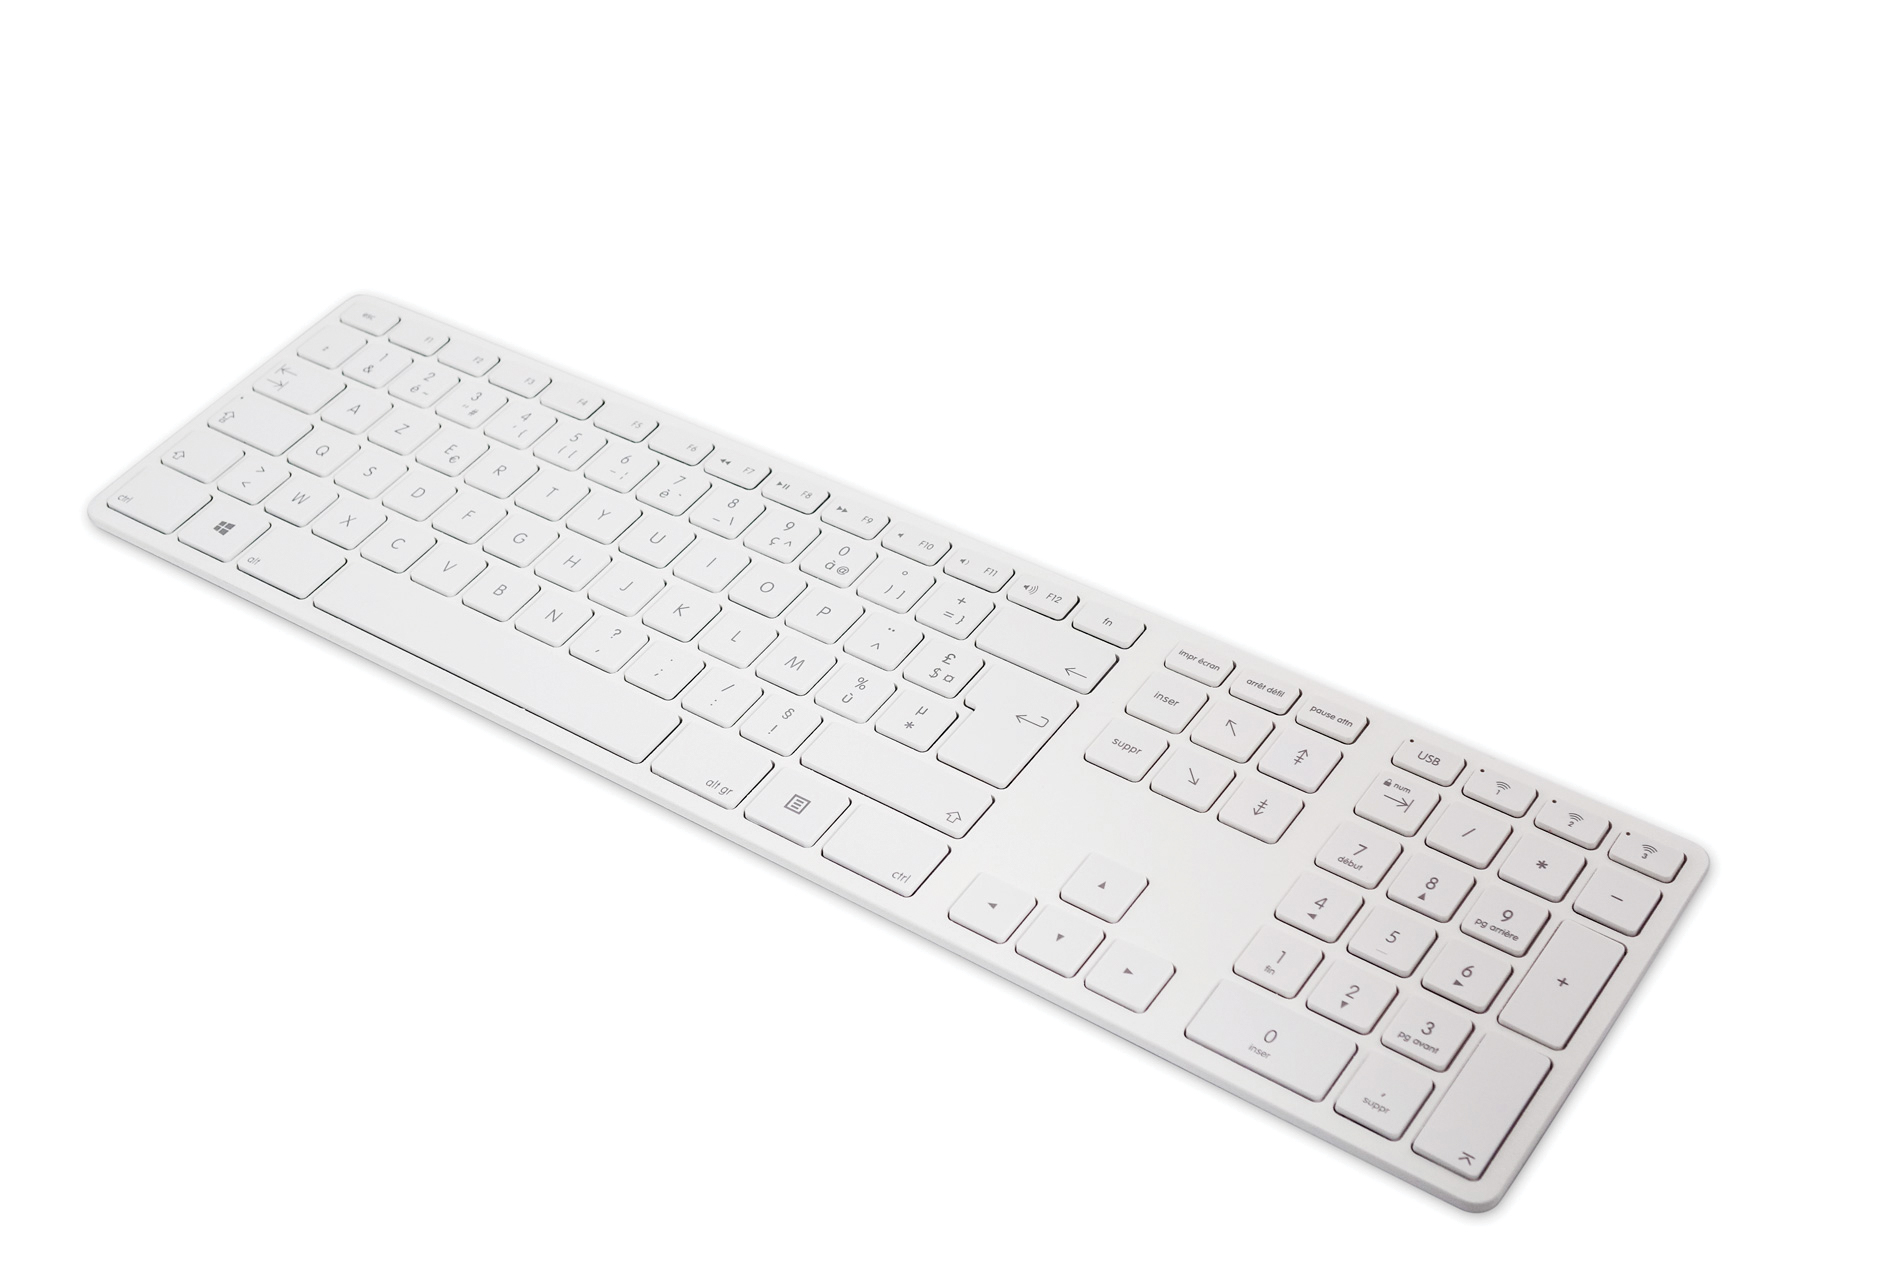 - BLEU & Aluminium Design 3 USB ABS-Verbinde & JOUR Tastatur - Geräte, Bluetooth Europäisches